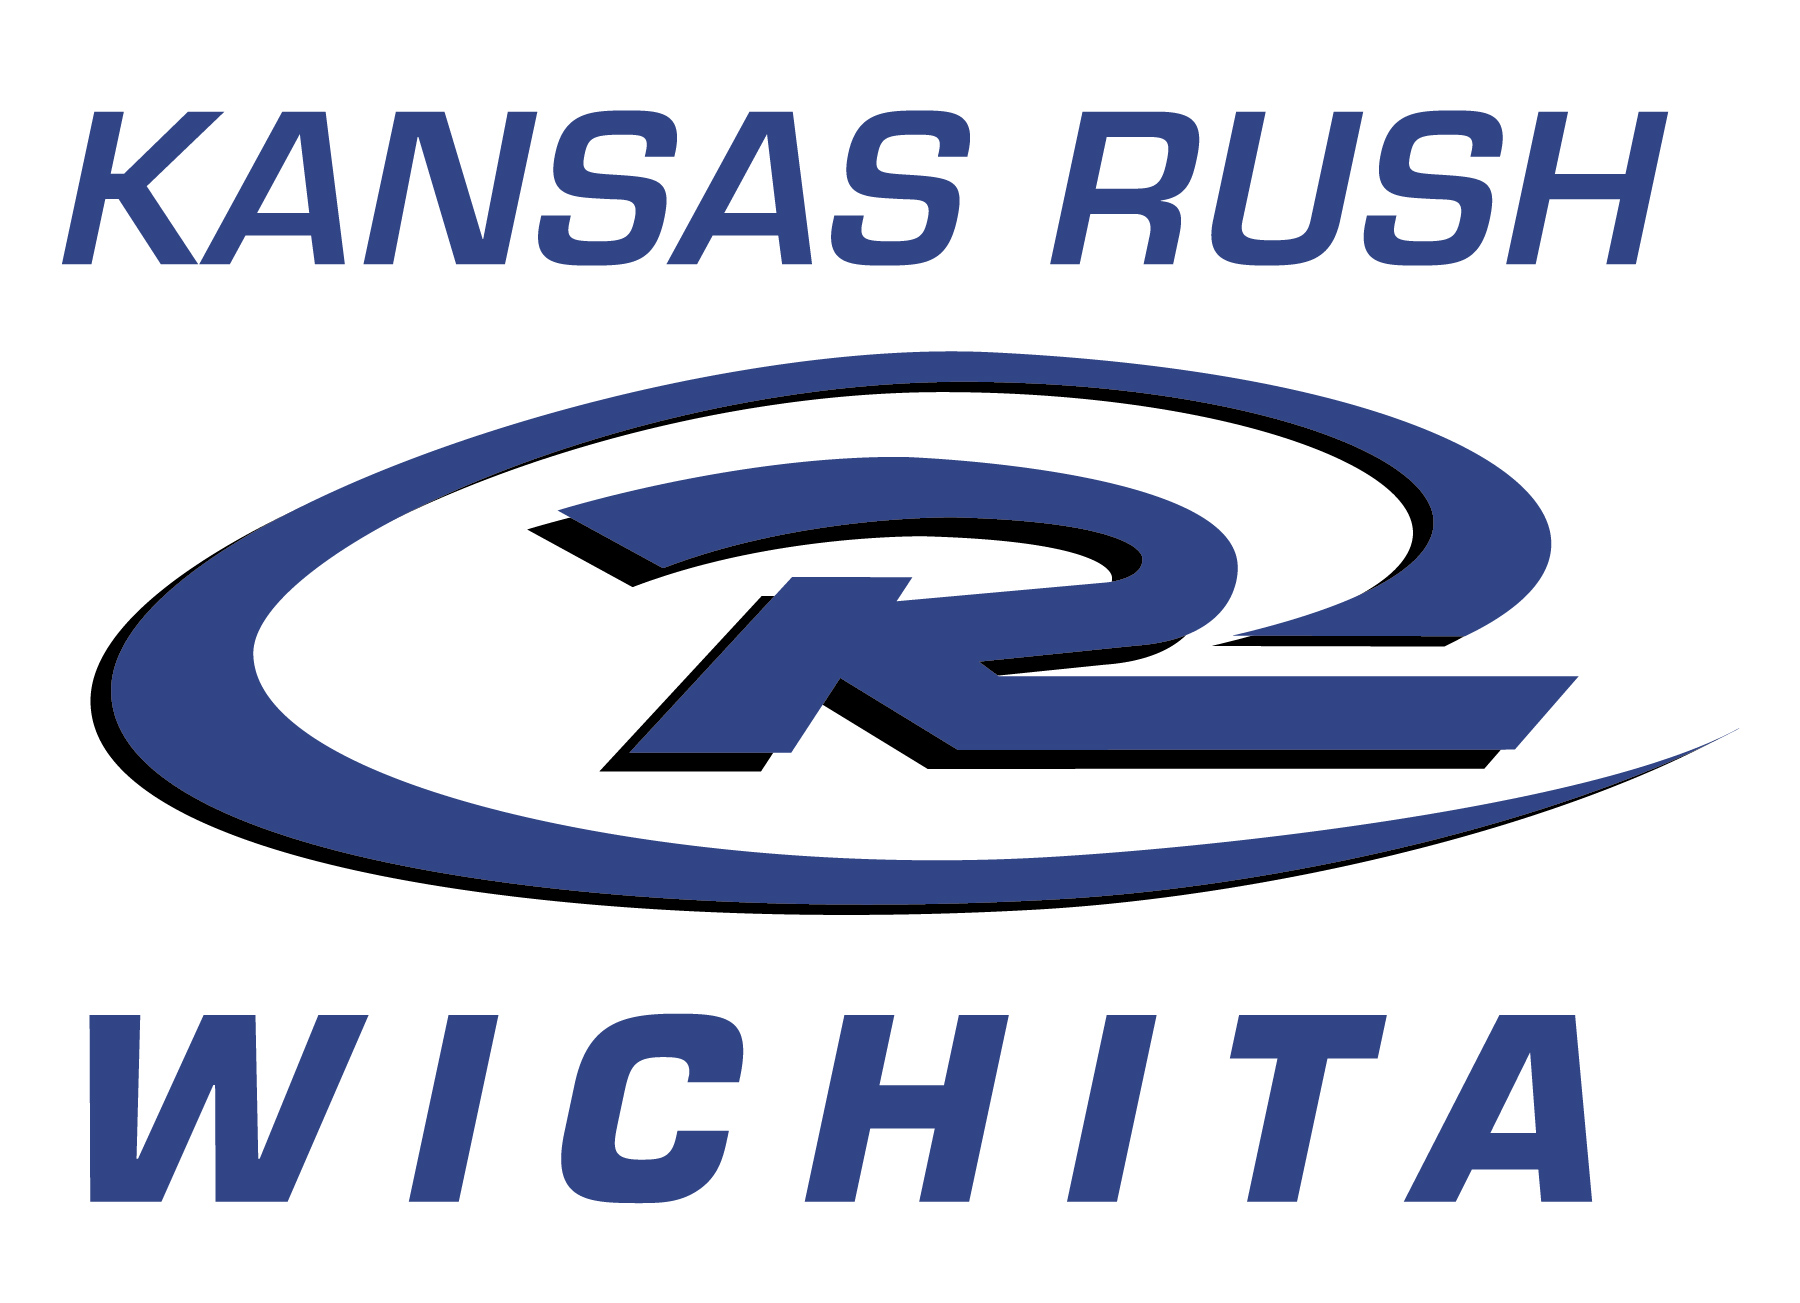 Kansas Rush Wichita team badge